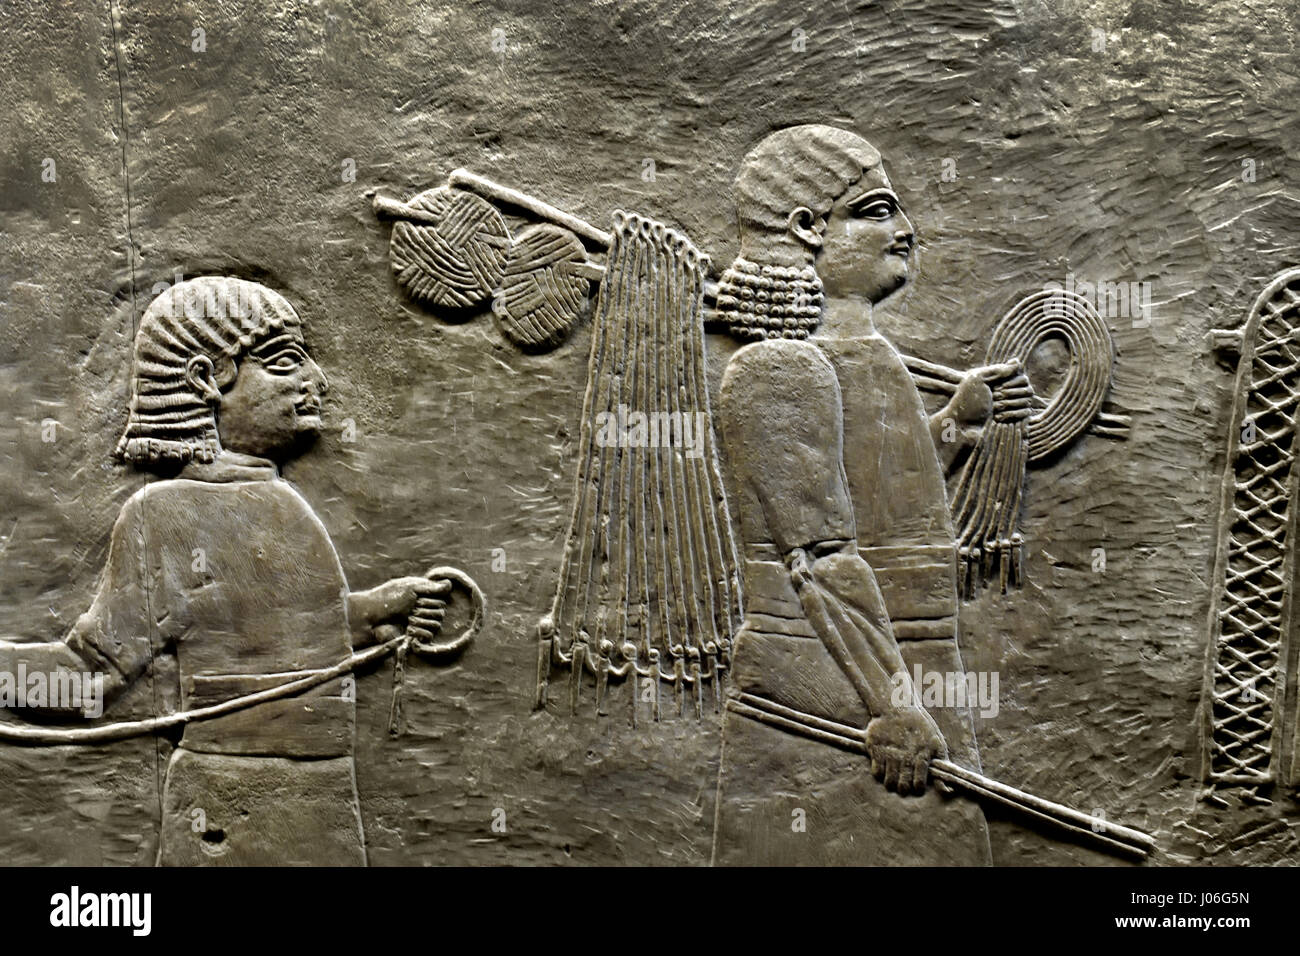 Die königliche Löwen jagen König Assurbanipals aus Nord-Palast von Ninive 645-635 v. Chr. Mesopotamien Irak Assyrien (König Assurbanipal oder Ashshurbanipal, Sohn von Esarhaddon und der letzte starke König des neuassyrischen Reiches (934 – 609 v. Chr.) Details Stockfoto